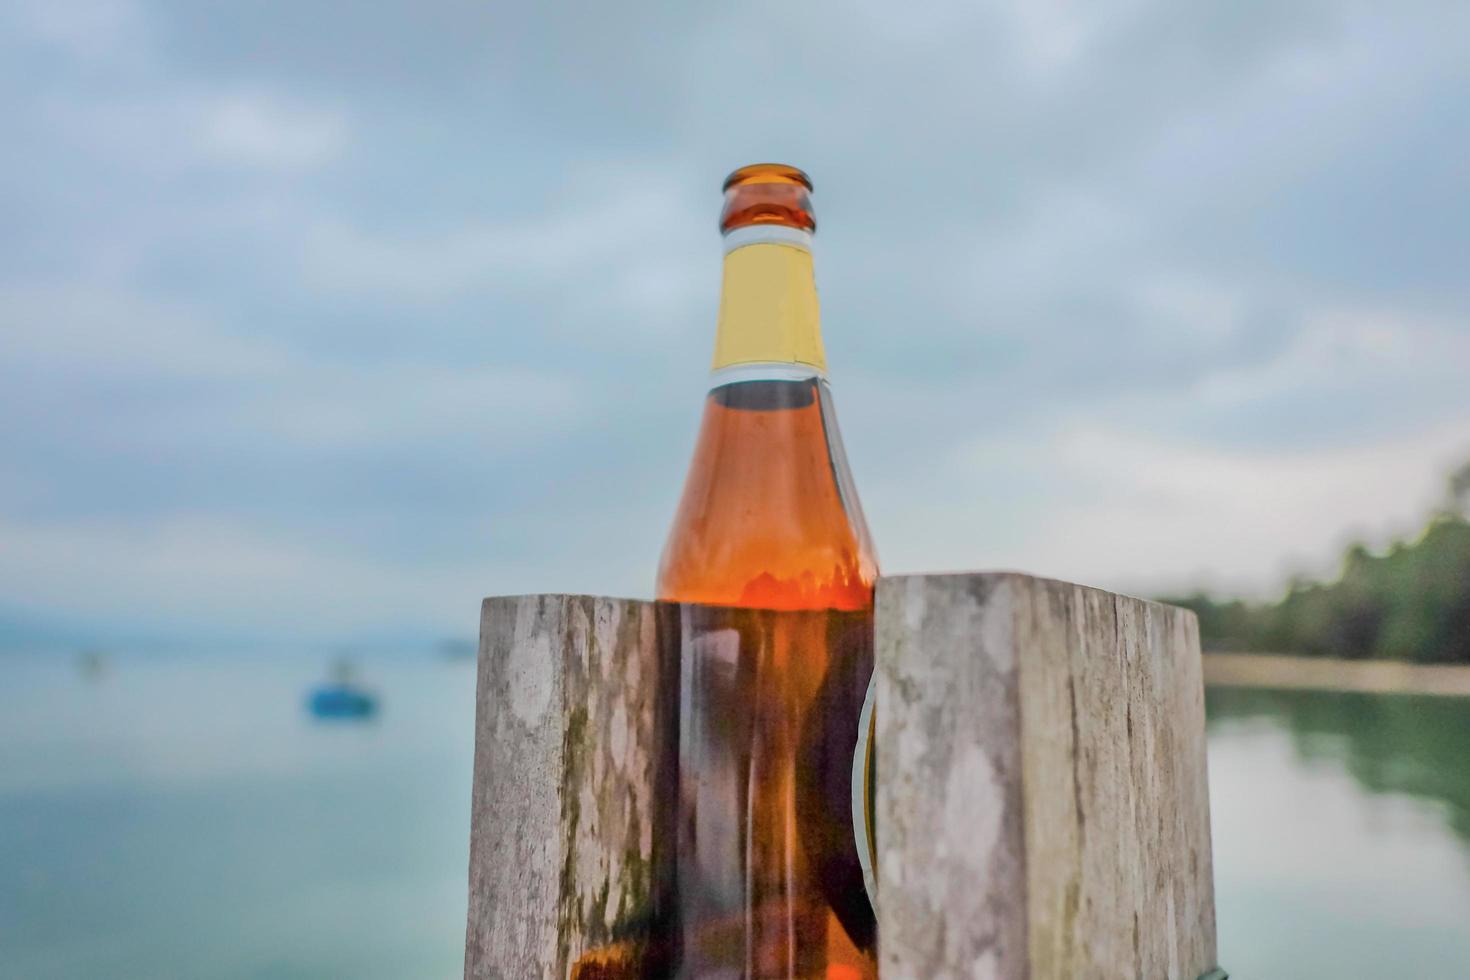 garrafa de cerveja na praia após a festa.koh mak island trat thailand.summer concept foto